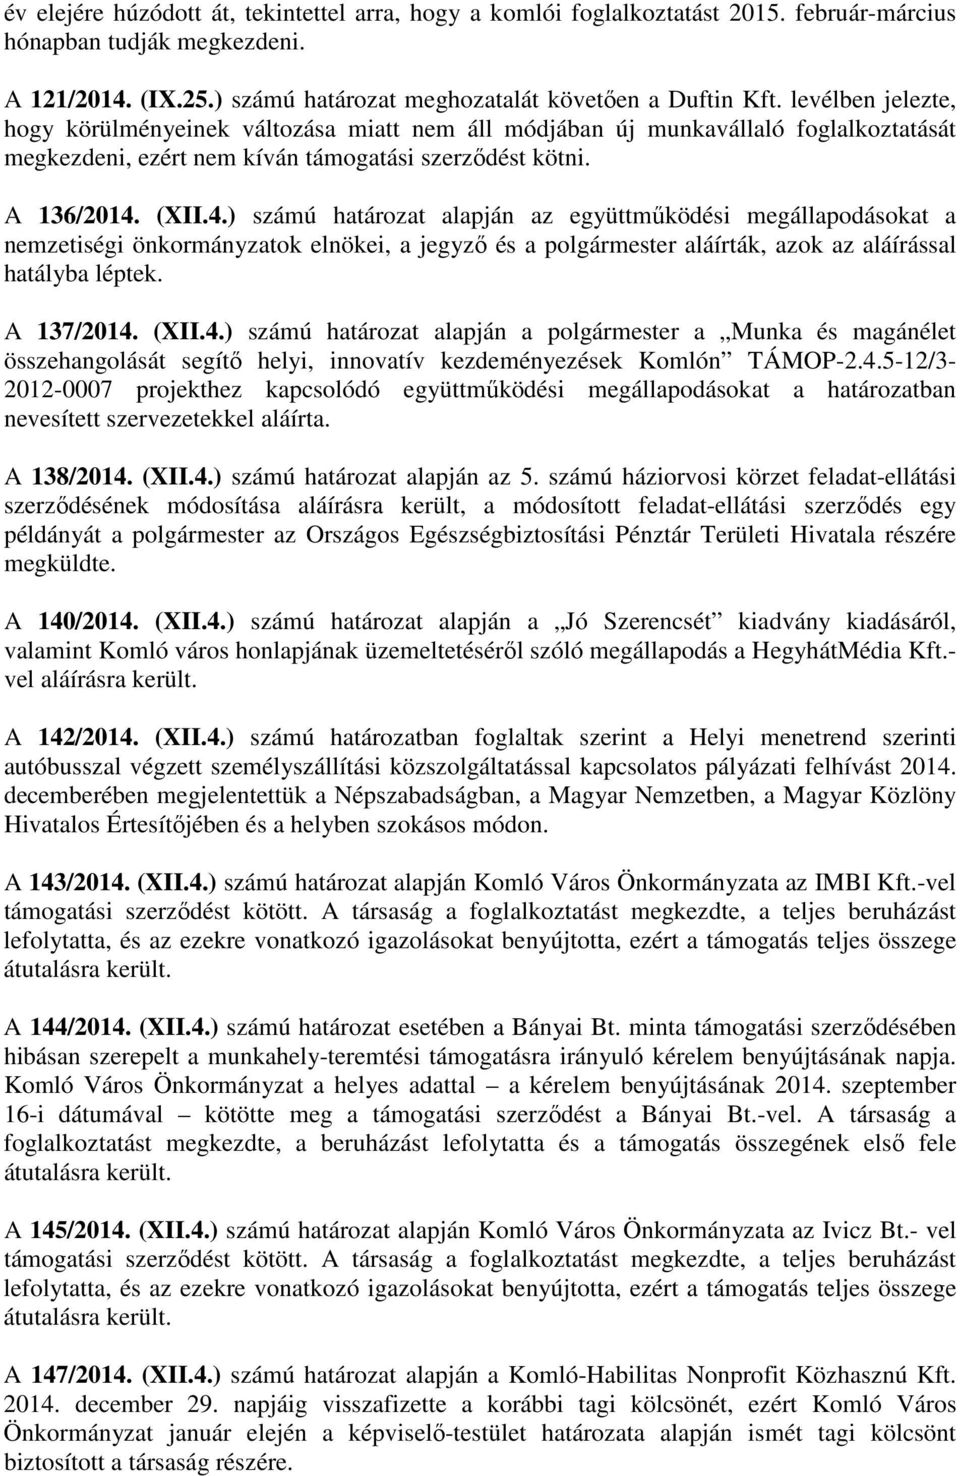 (XII.4.) számú határozat alapján az együttműködési megállapodásokat a nemzetiségi önkormányzatok elnökei, a jegyző és a polgármester aláírták, azok az aláírással hatályba léptek. A 137/2014. (XII.4.) számú határozat alapján a polgármester a Munka és magánélet összehangolását segítő helyi, innovatív kezdeményezések Komlón TÁMOP-2.